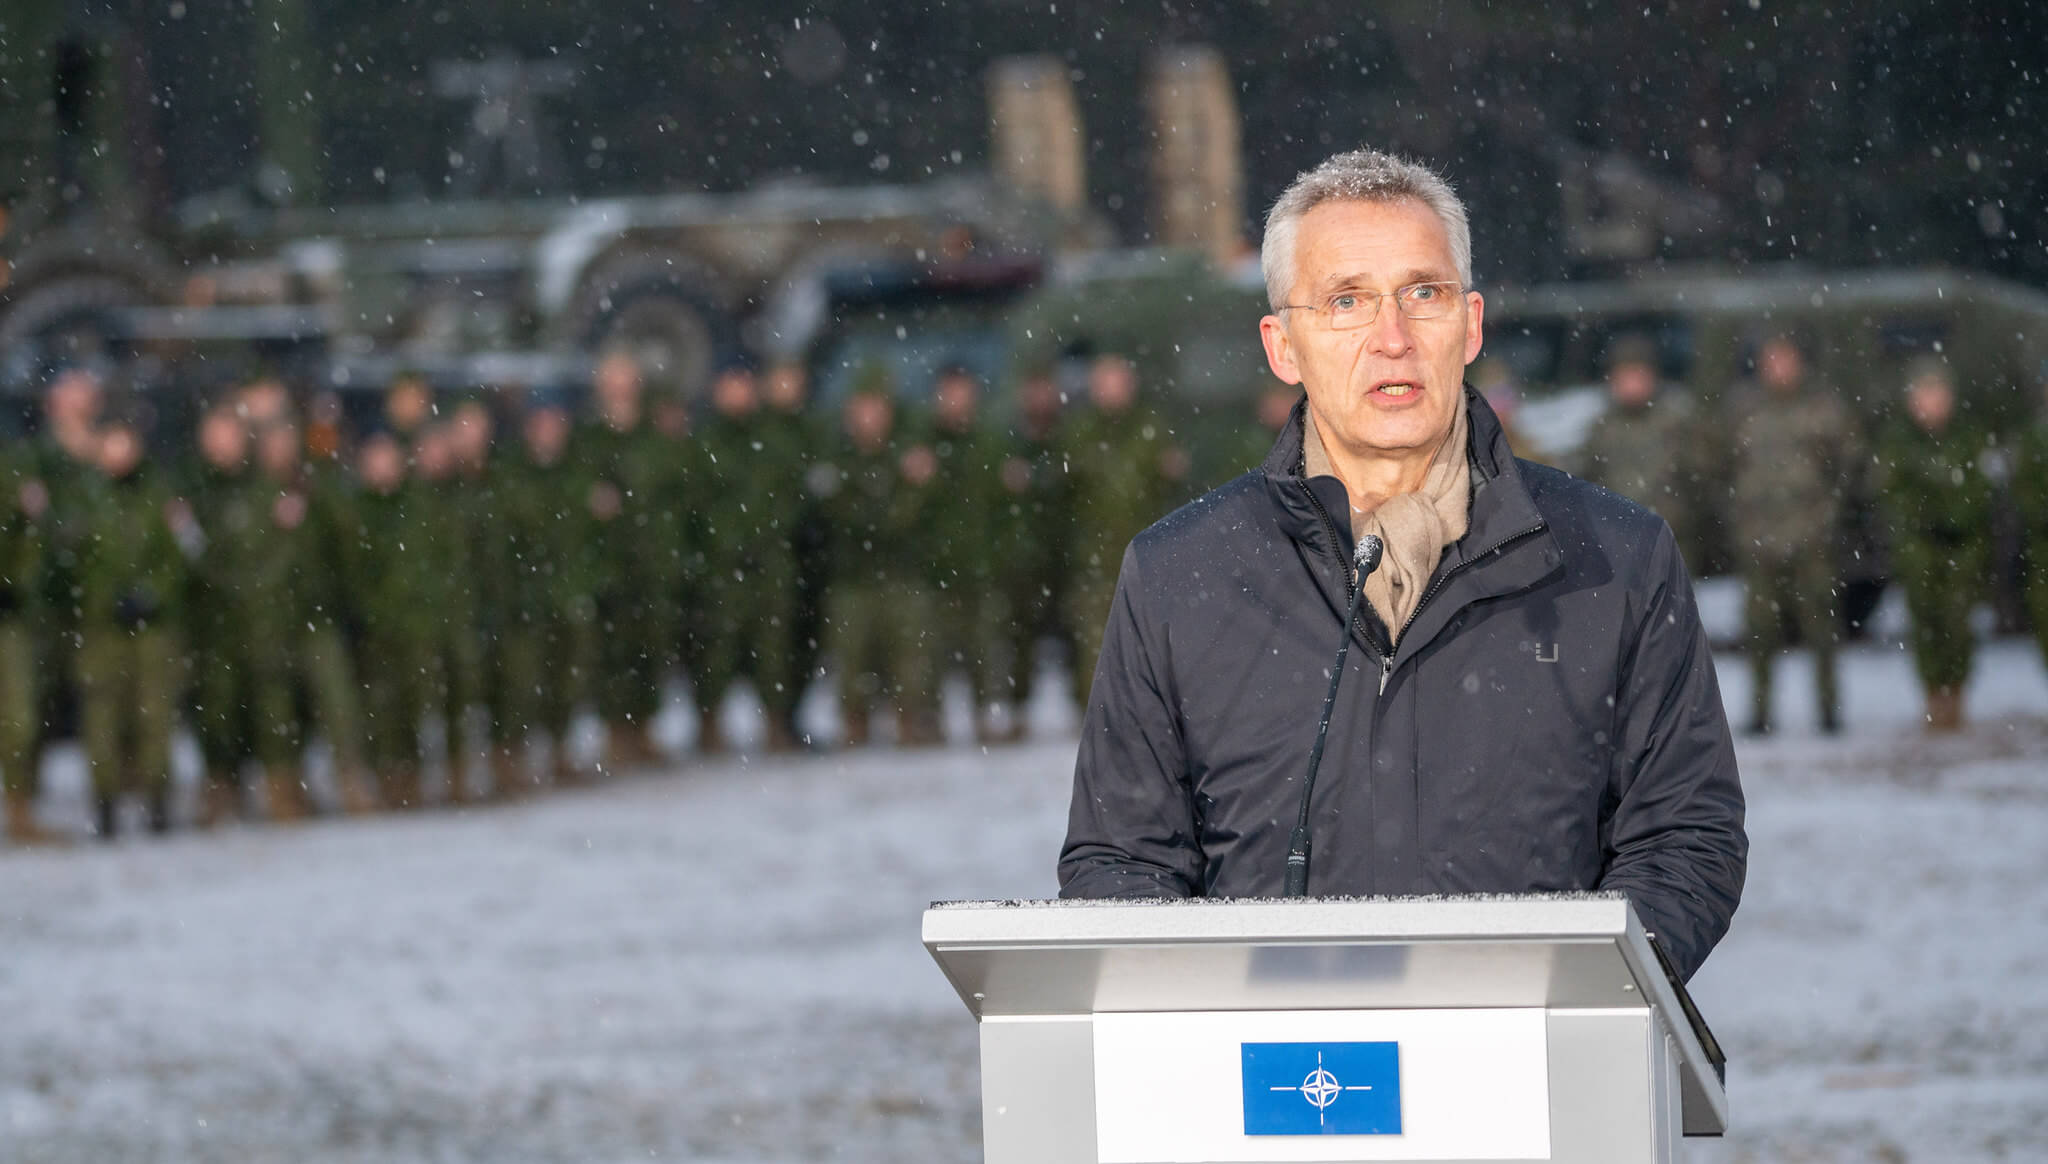 NATO Secretary General Jens Stoltenberg in Riga, Latvia on 8 March 2022. NATO